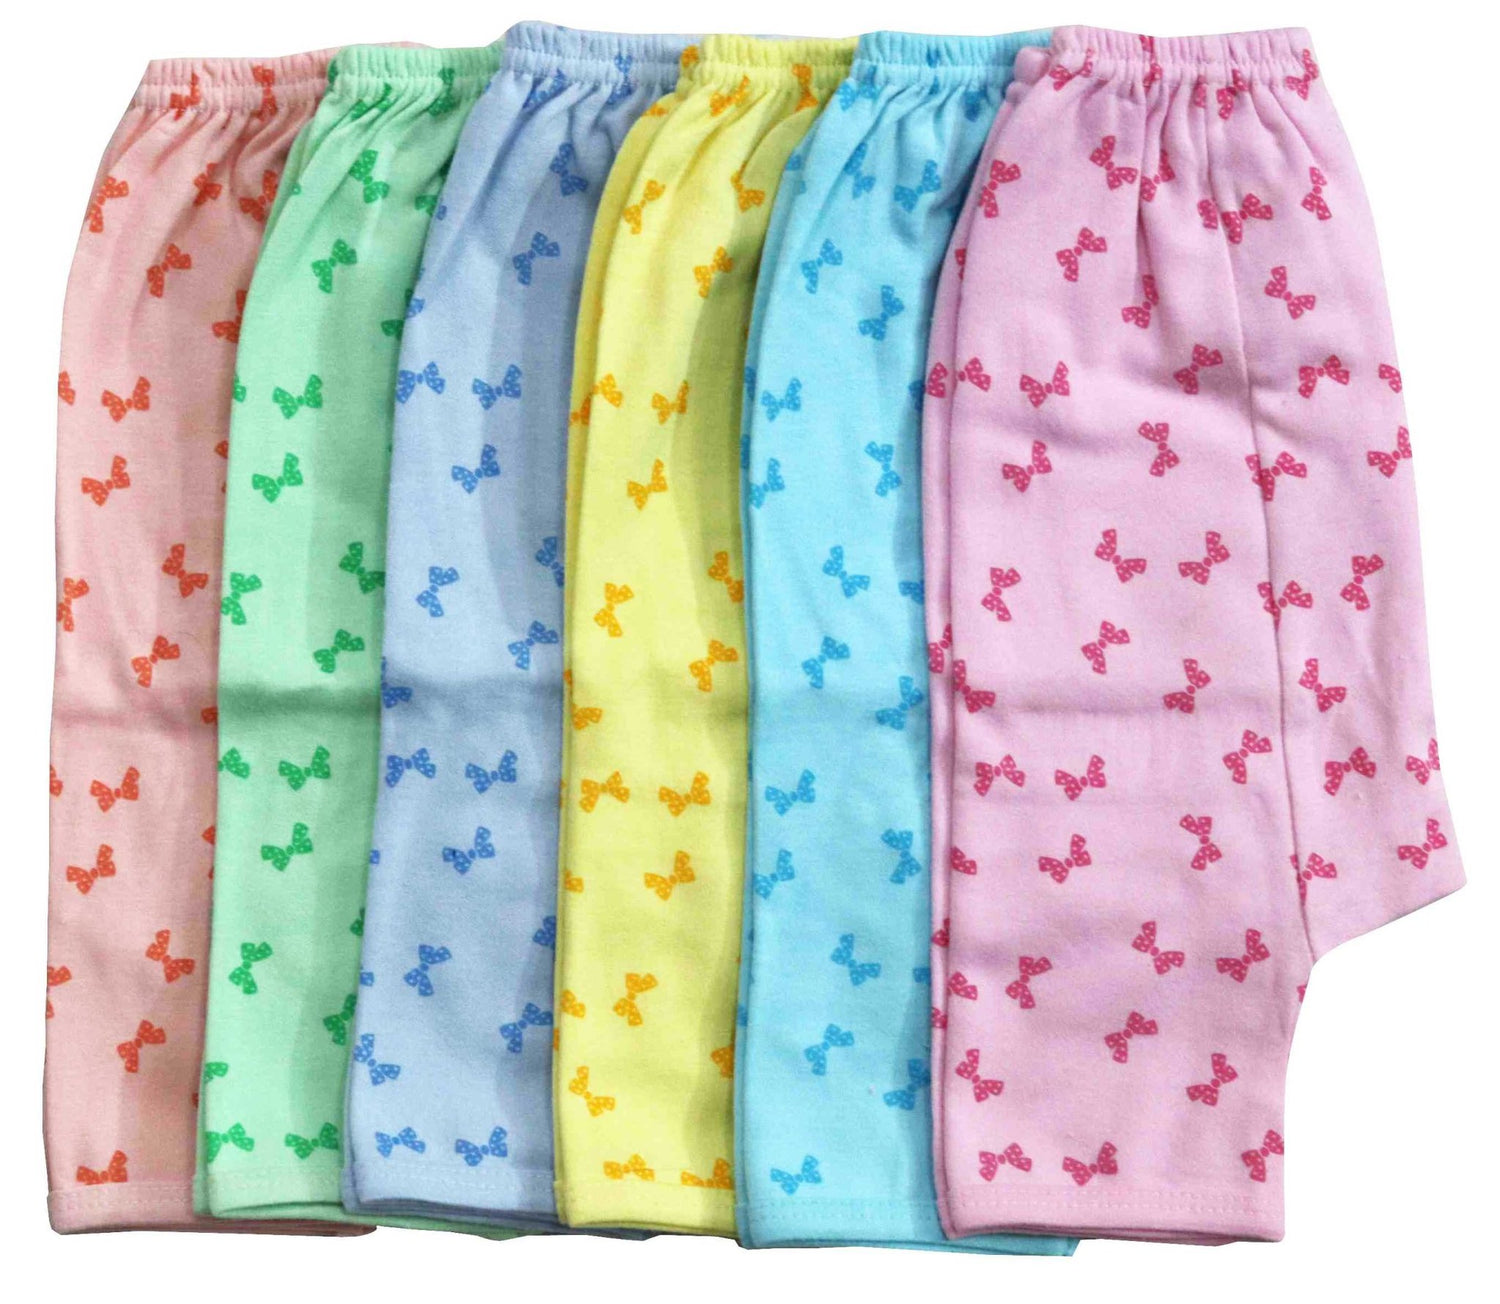 Newborn pure soft cotton pajamas | diaper pants pack of 6 pcs. ( 0-3 months ) - FAVISM